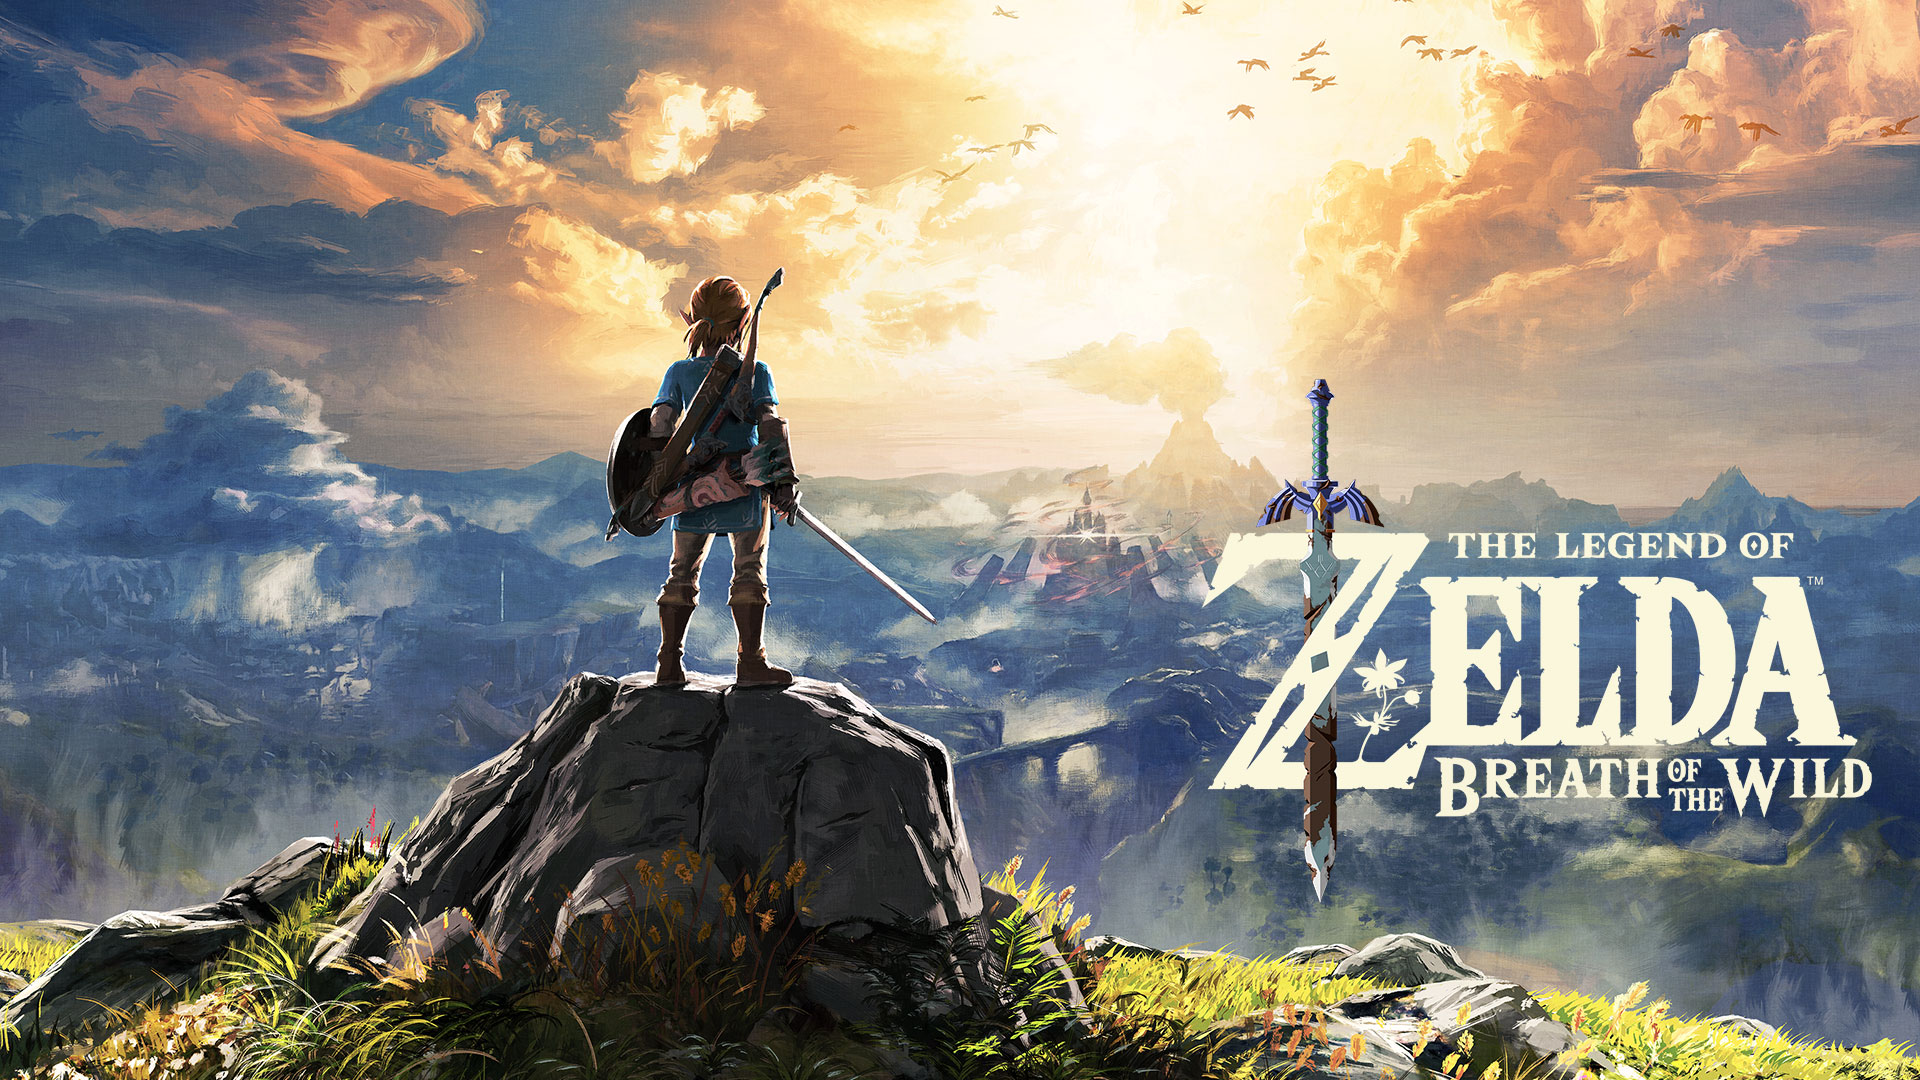 بهترین بازی های کمپانی سونی؛ افسانه زلدا: نفس وحش - The Legend of Zelda: Breath of the Wild